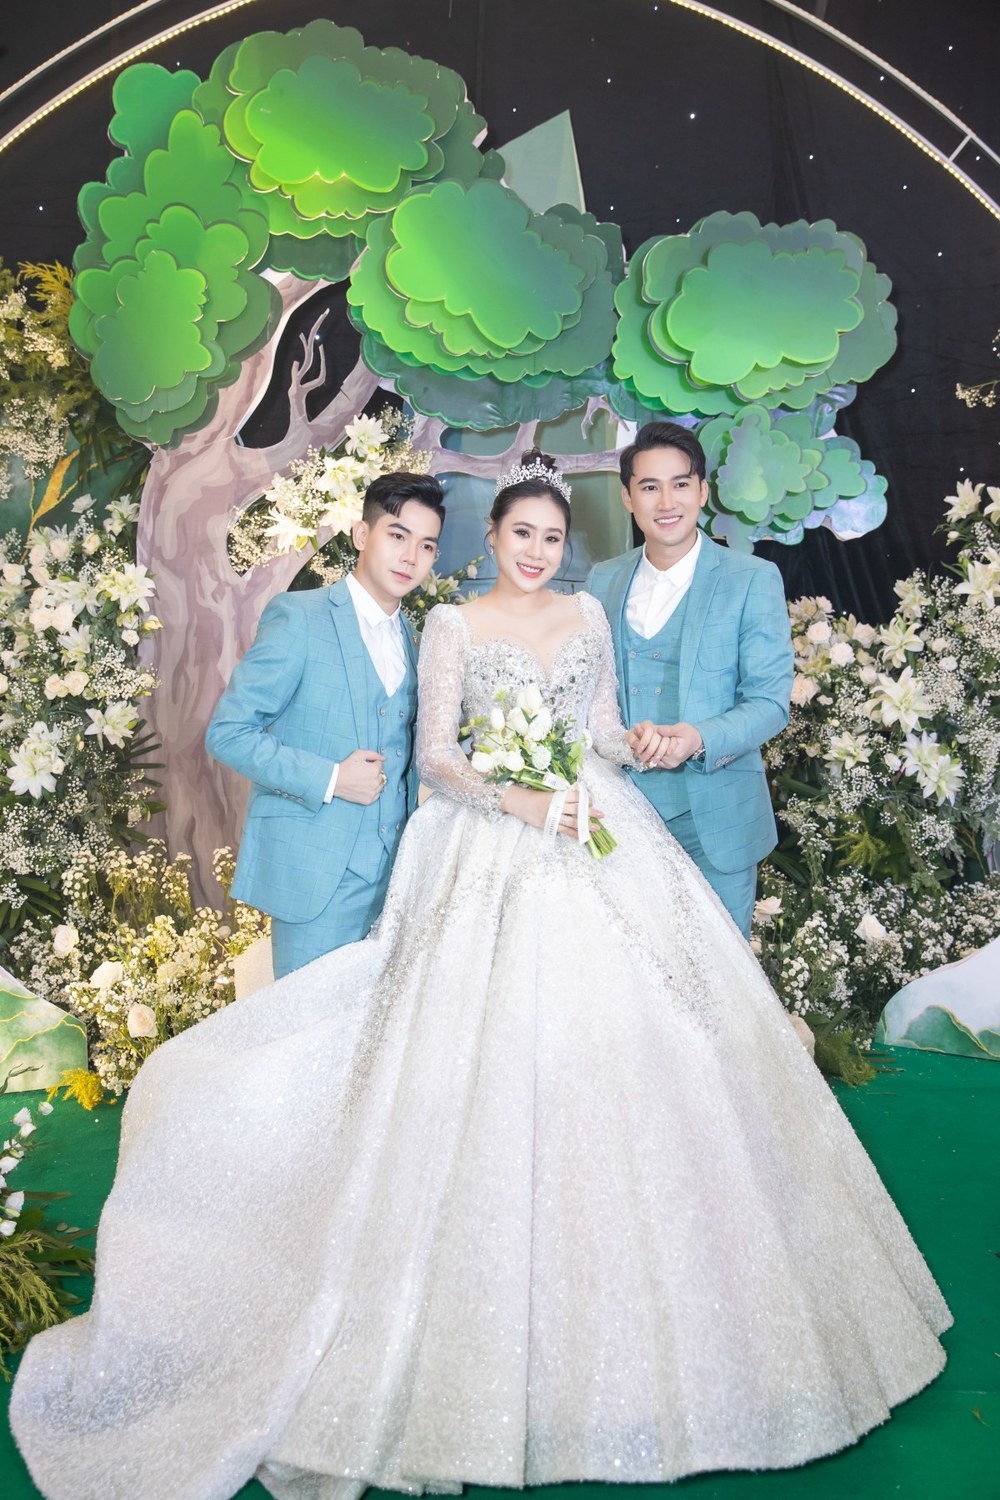  
Hà Trí Quang và "người tình tin đồn" Thanh Đoàn cùng diện vest đôi đồng điệu màu xanh tại đám cưới. (Ảnh: Lê Huy)